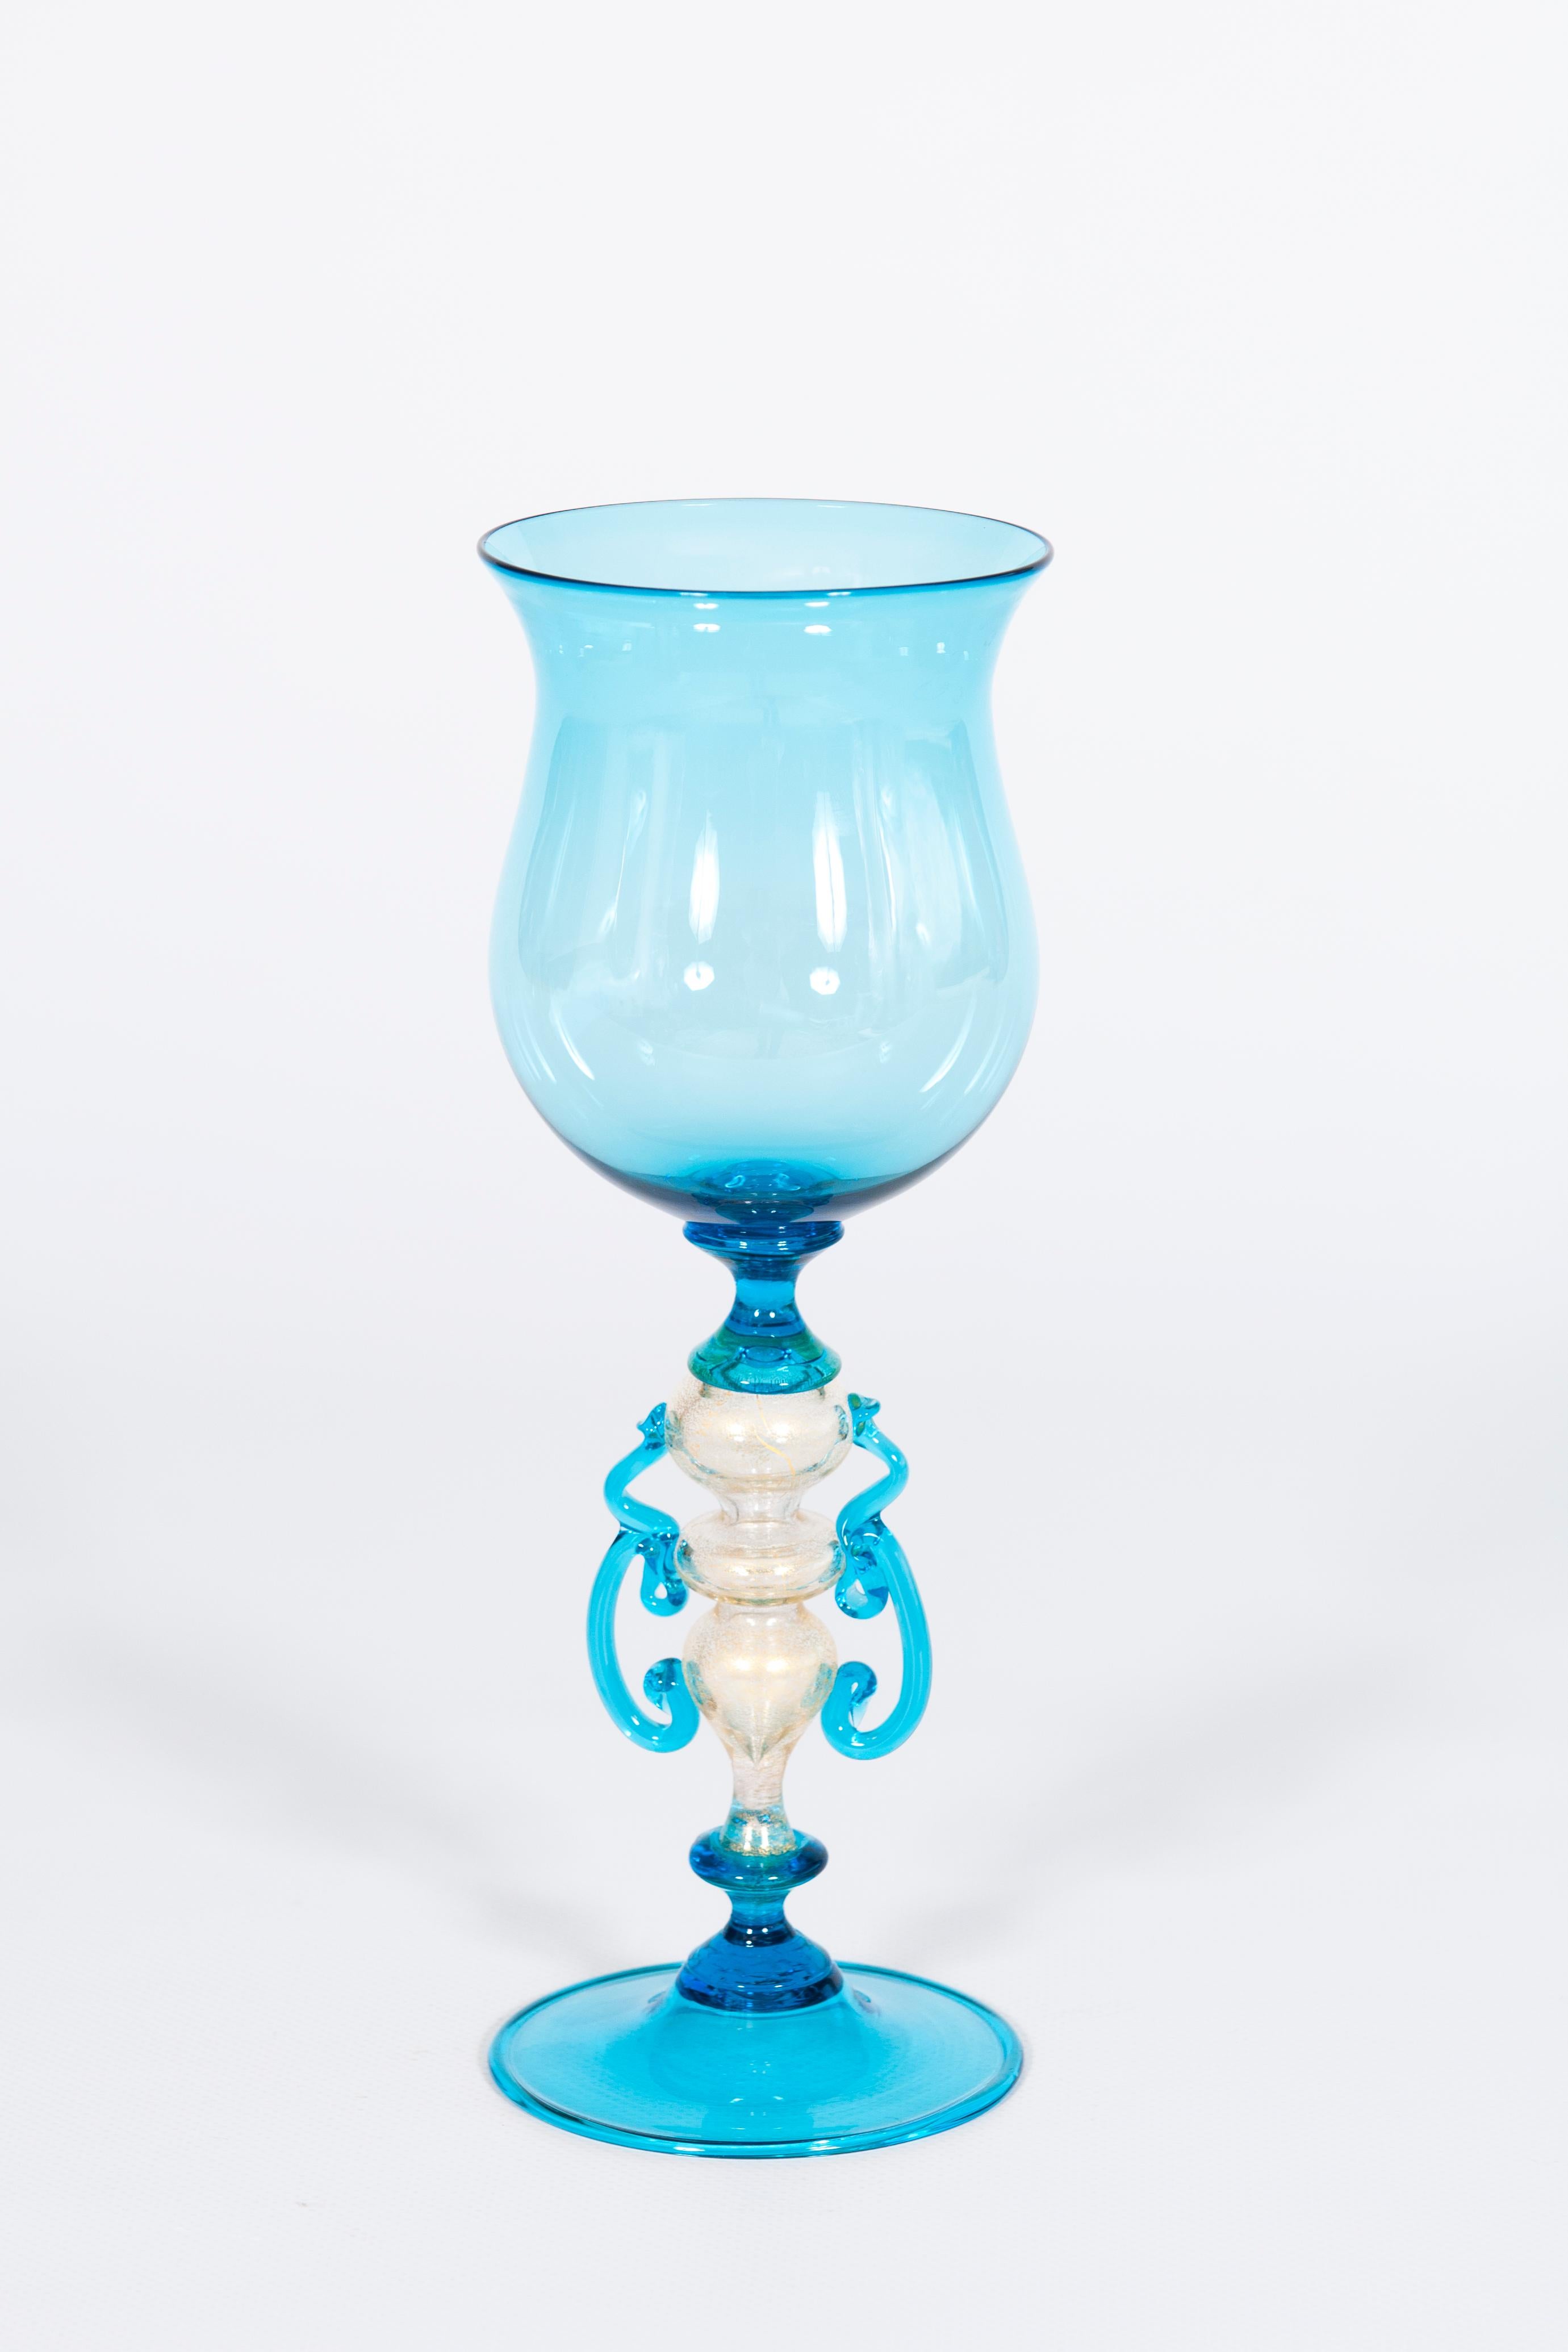 Himmelblaues Stielglas aus mundgeblasenem Murano-Glas und Blattgold aus den 1990er Jahren in Venedig, Italien.
Dieses raffinierte Stielglas wurde in den 1990er Jahren vollständig von Hand gefertigt und ist das Ergebnis feinster mundgeblasener